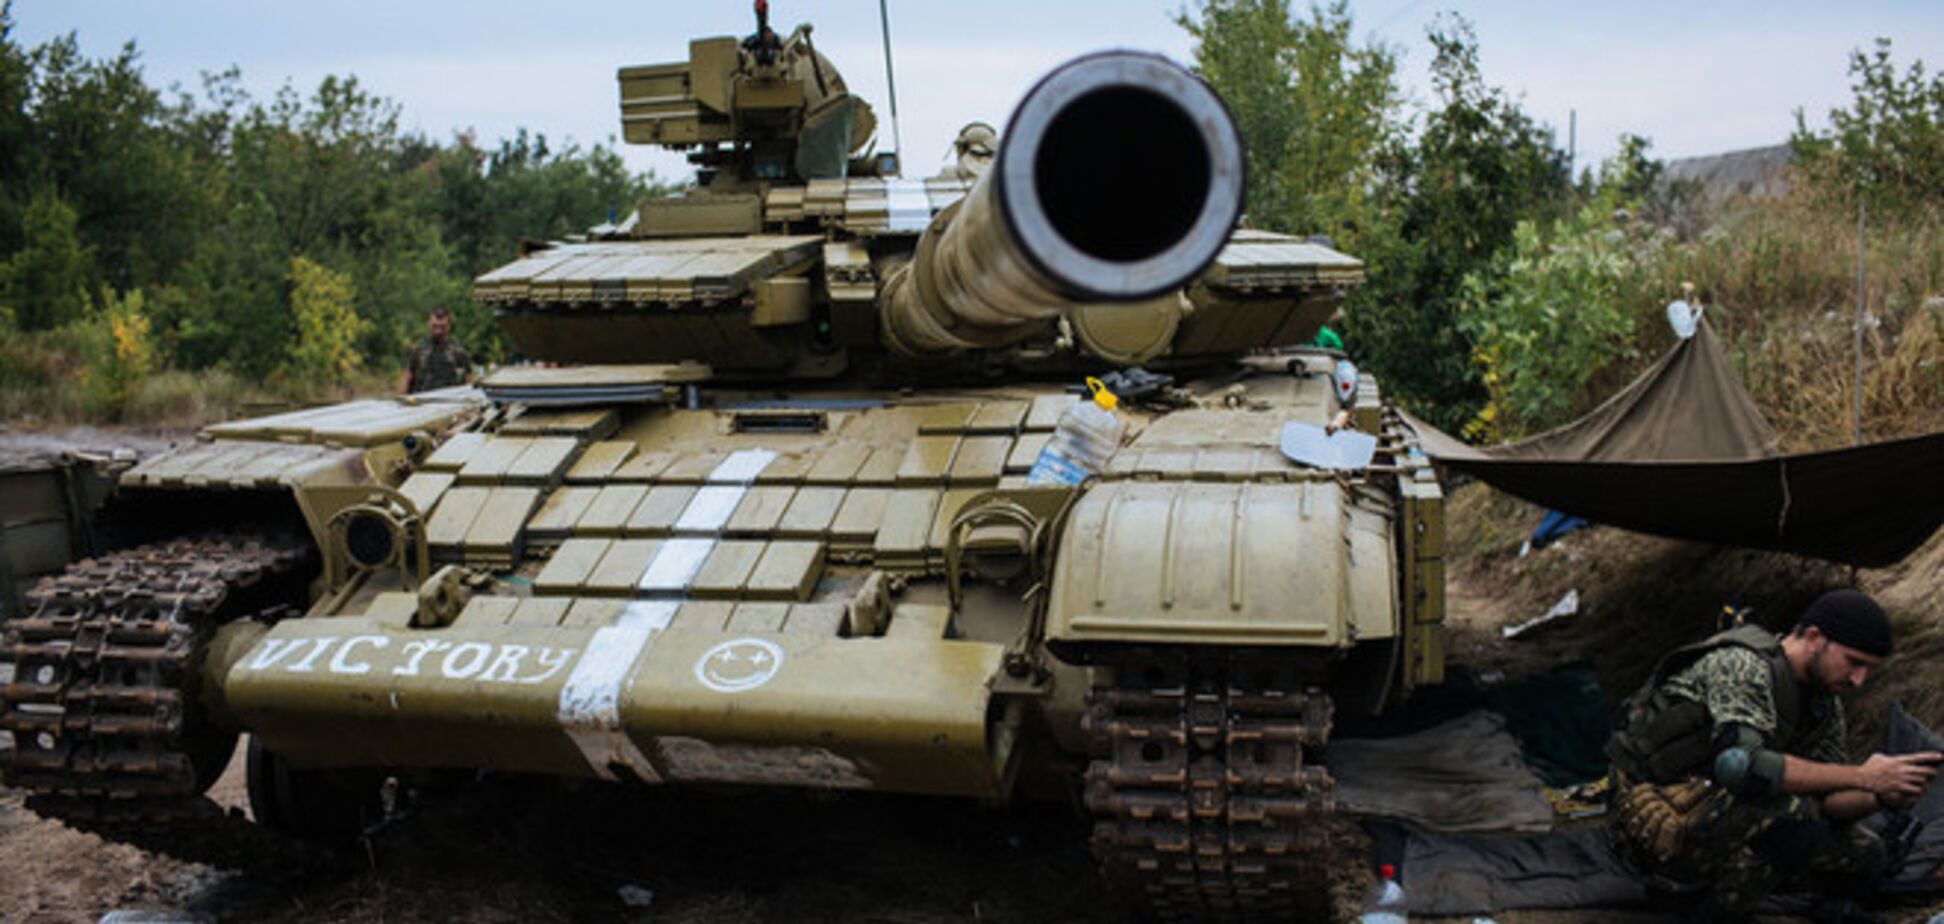 Генерал Гречанинов: у России есть условия прекращения войны на Донбассе